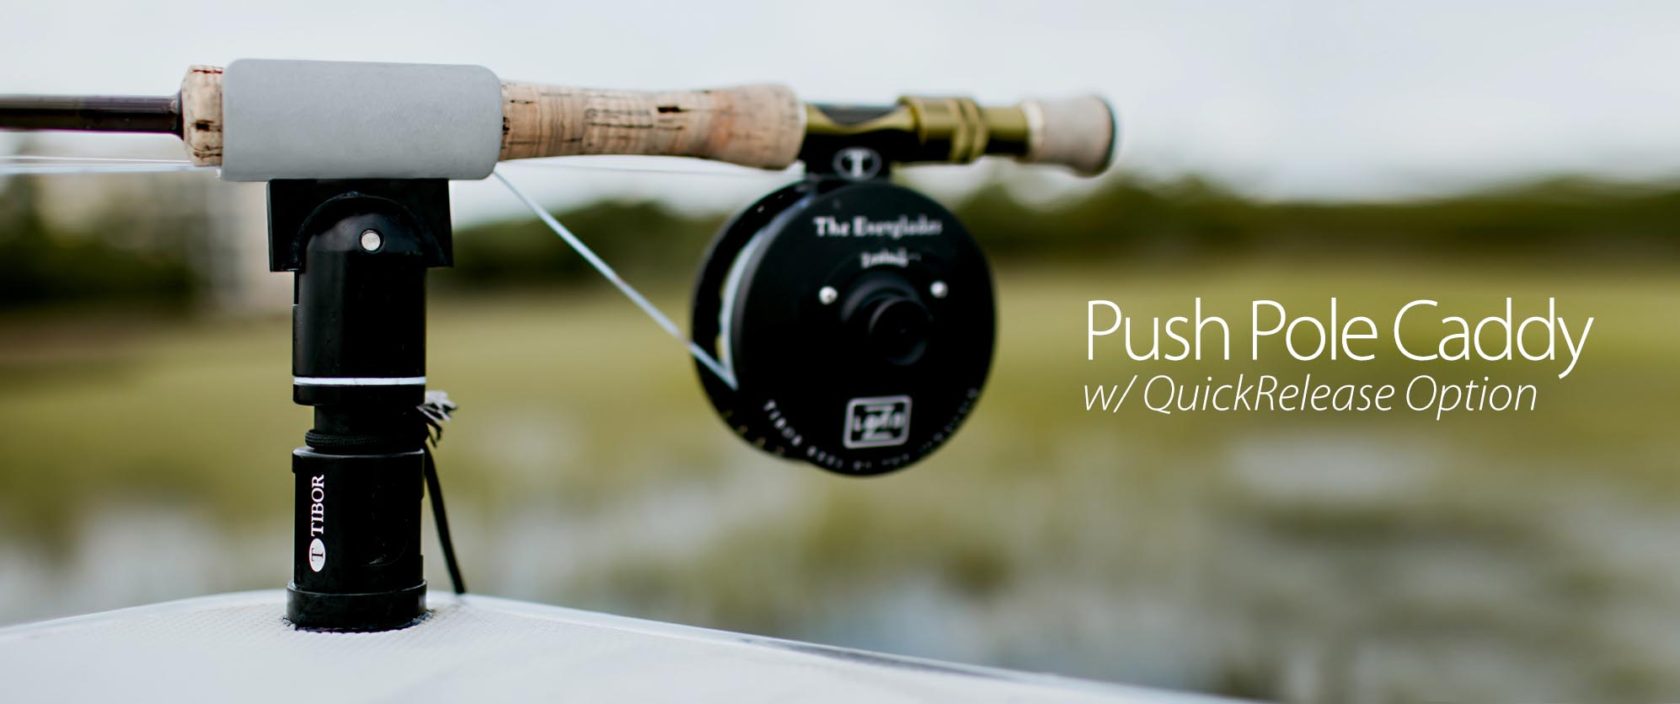 Push Pole Caddy